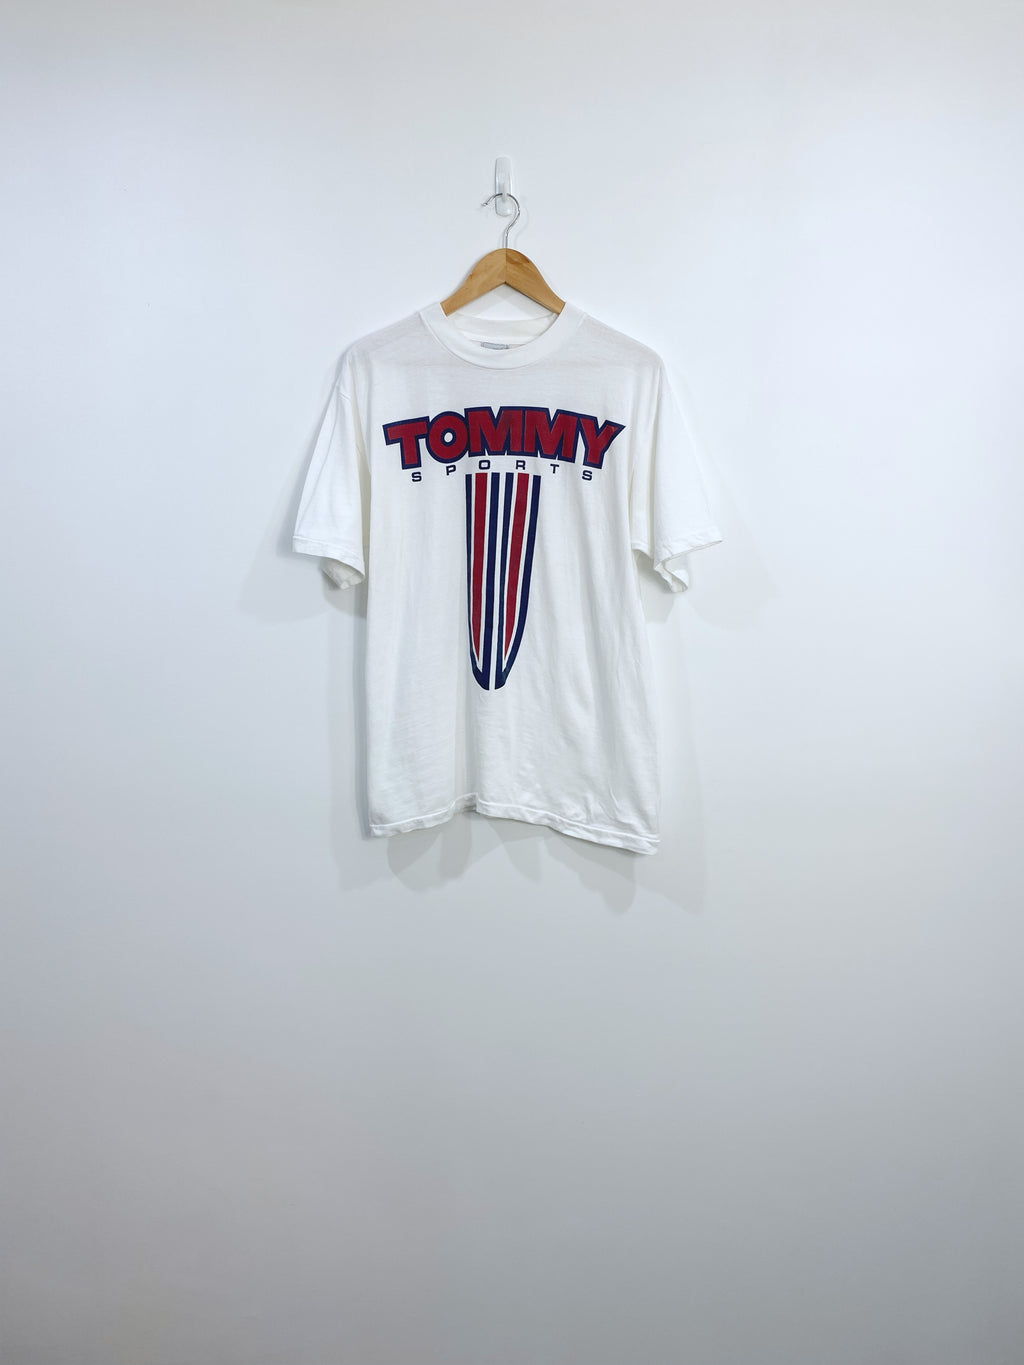 Vintage 90s Tommy Hilfiger T-shirt M